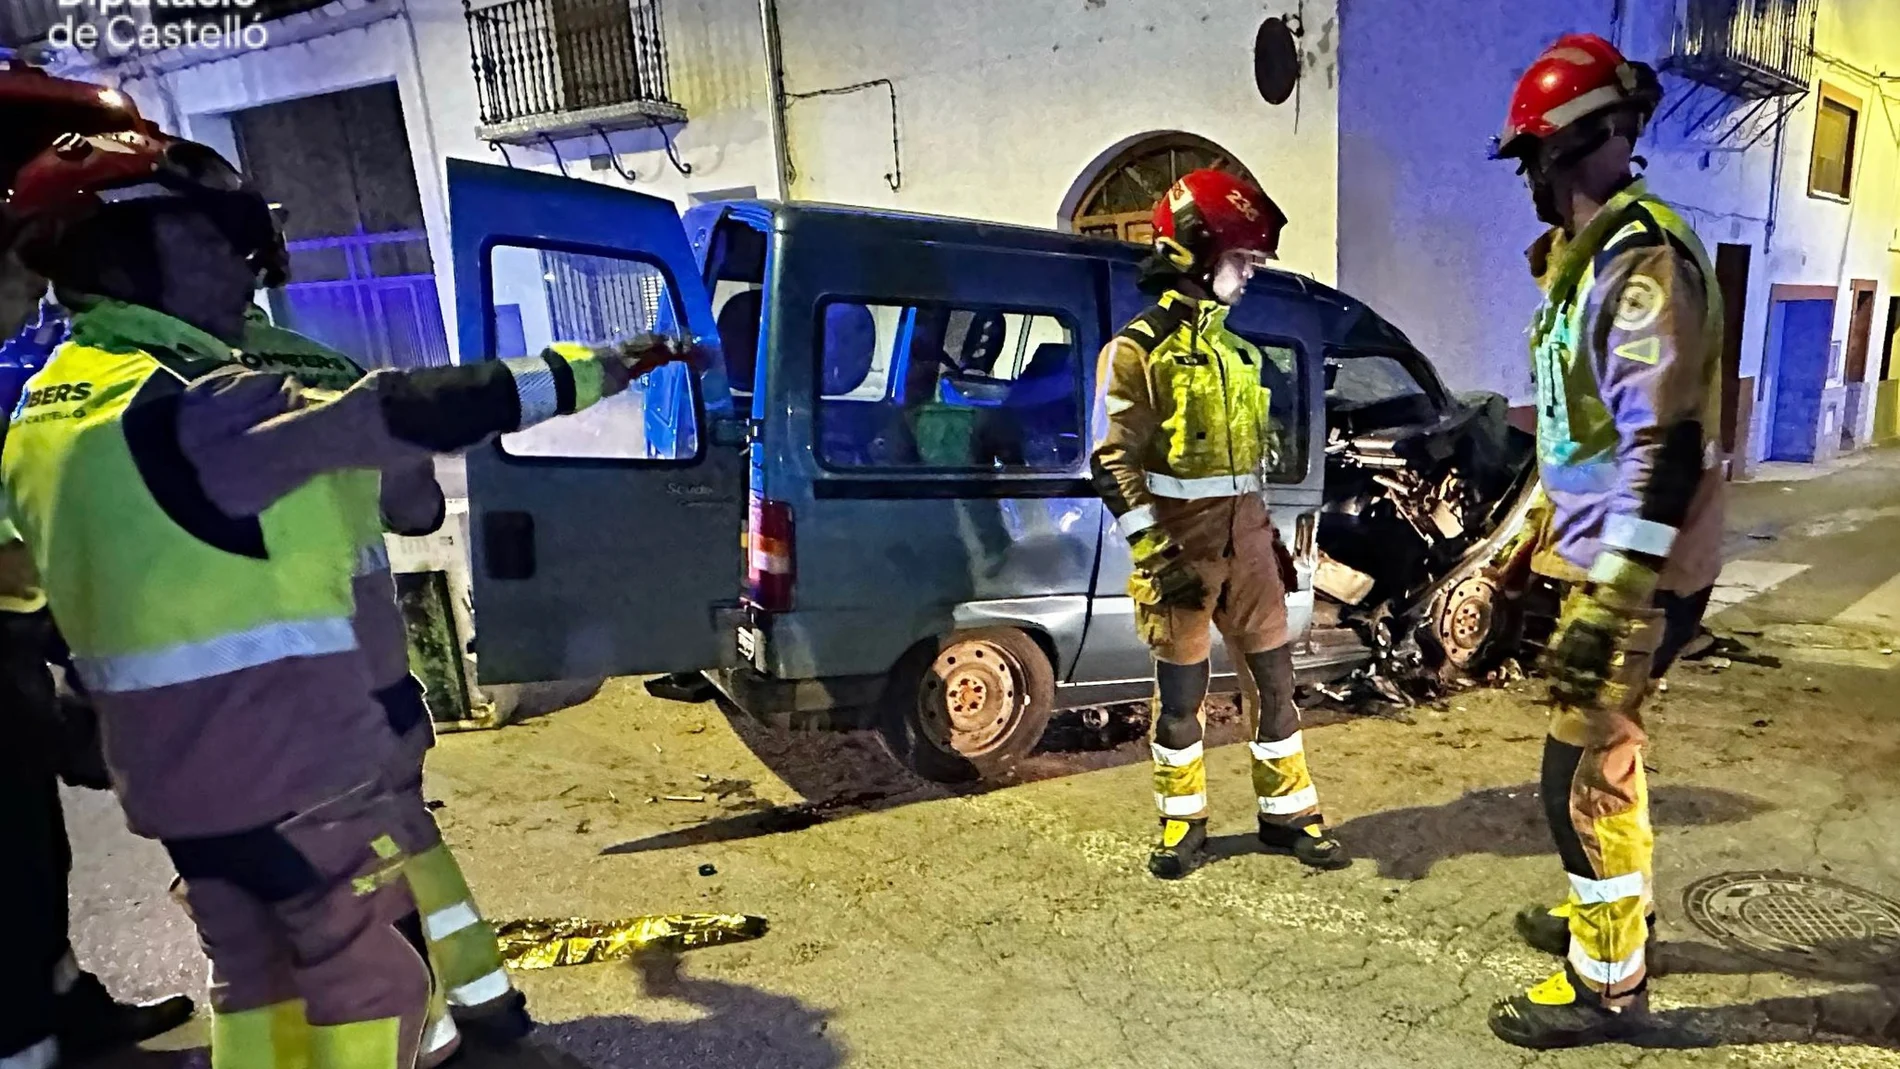 Mueren dos personas y otras tres resultan heridas en un accidente de tráfico en Jérica